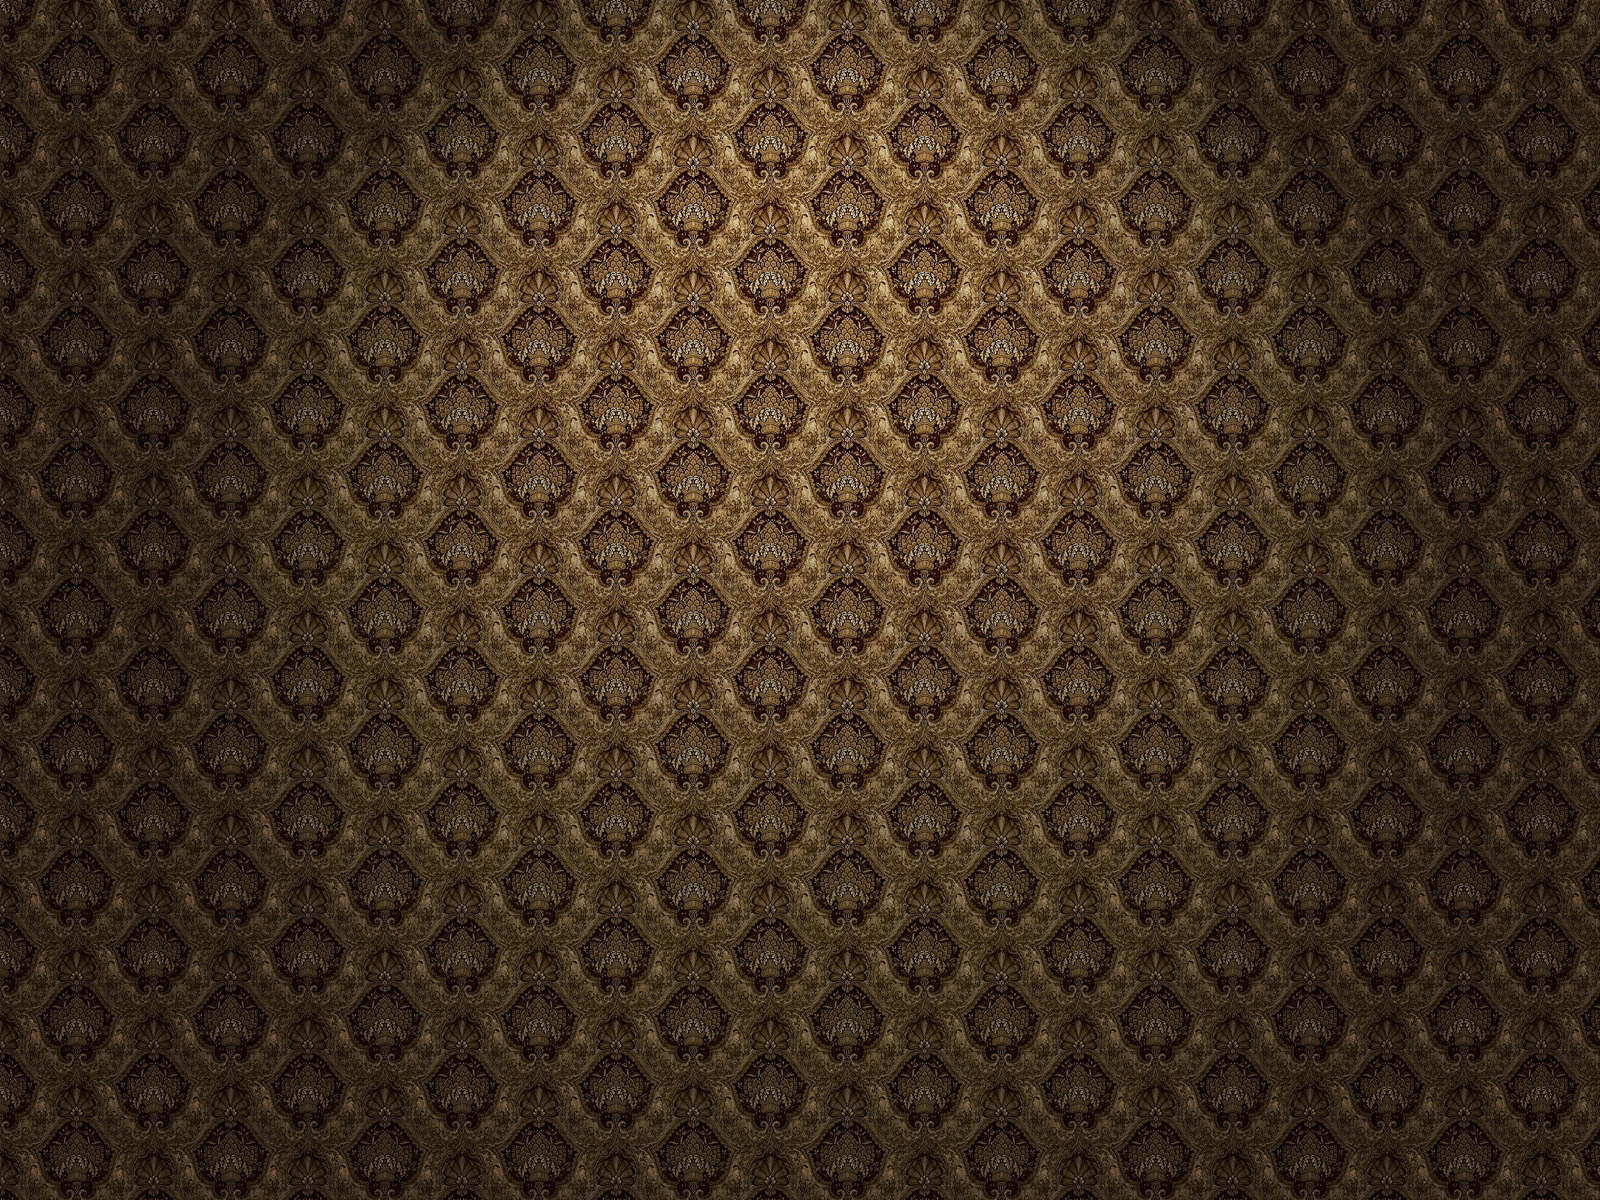 Wall Pattern Texture Wallpaper iPad iPhone Ipodz